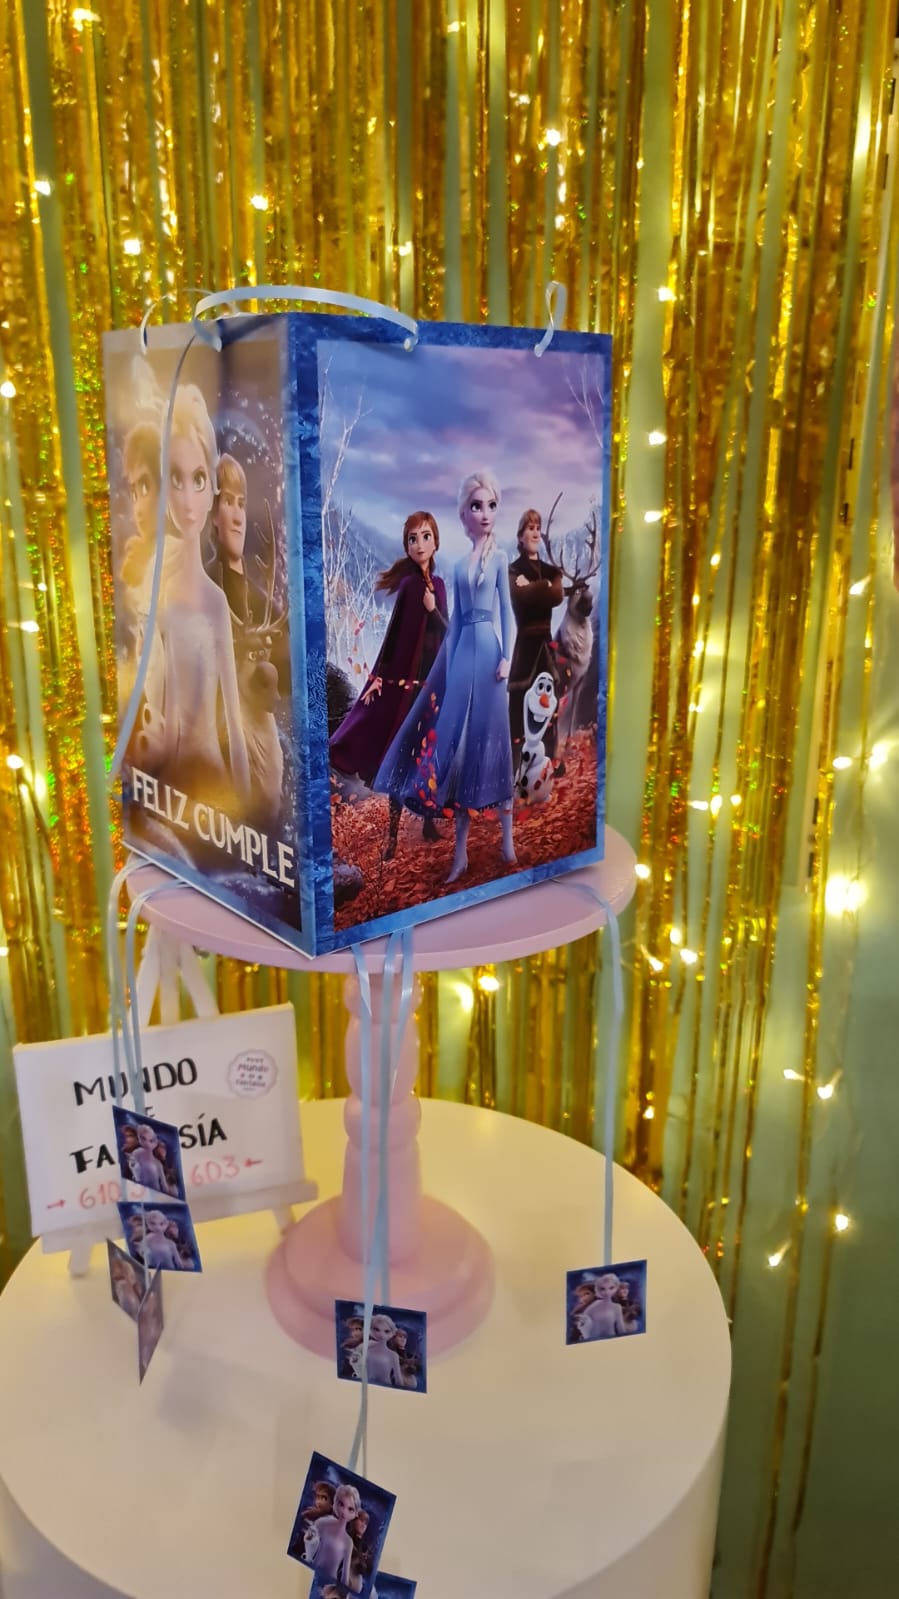 Piñata Frozen - Mundo de Fantasia Eventos